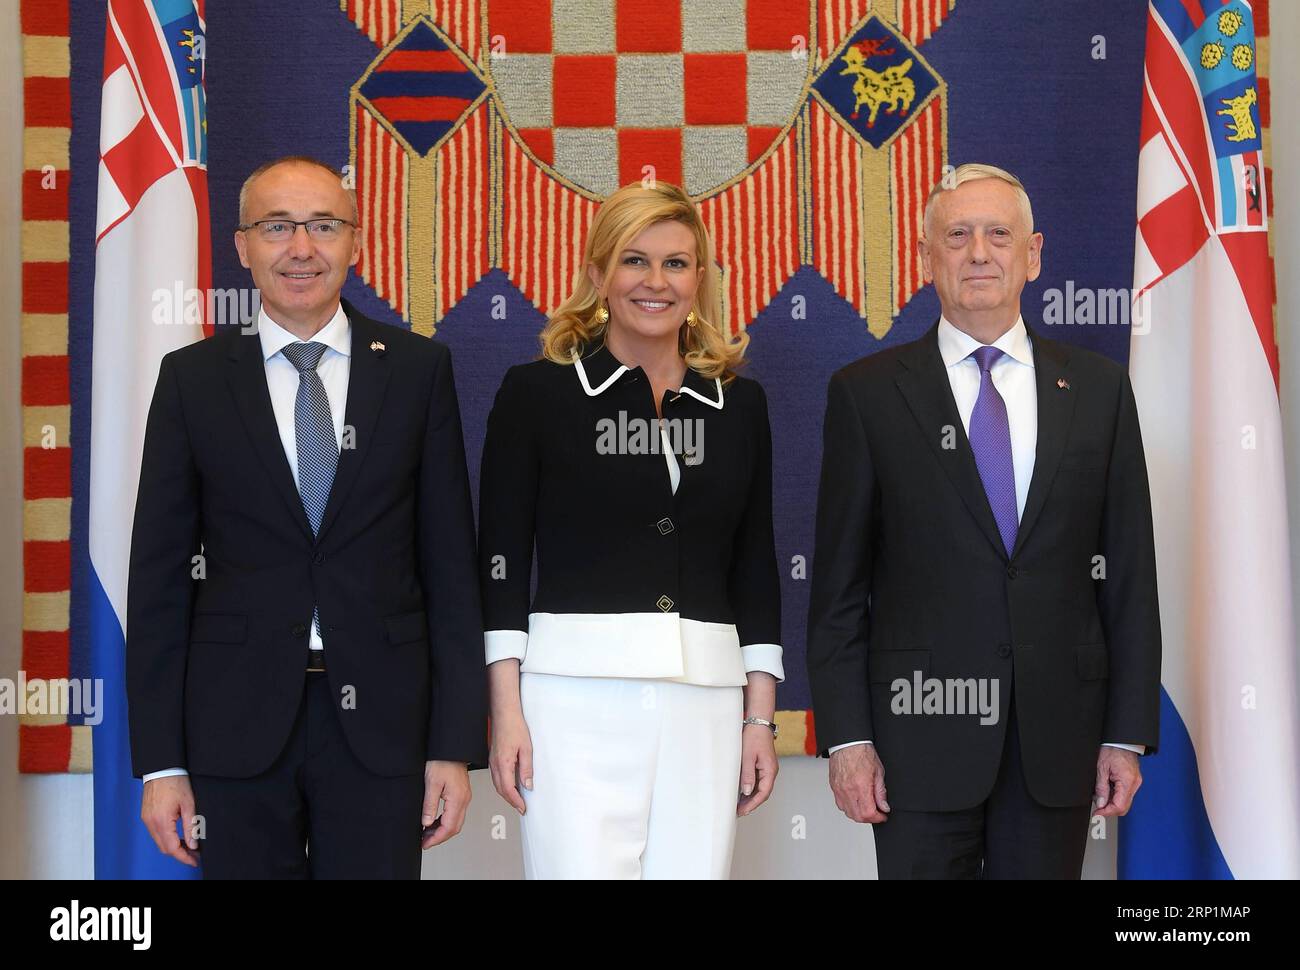 (180713) -- ZAGABRIA, 13 luglio 2018 -- il presidente croato Kolinda Grabar-Kitarovic (C) e il ministro della difesa Damir Krsticevic (L) ricevono il segretario alla difesa degli Stati Uniti James N. Mattis a Zagabria, Croazia, il 13 luglio 2018. Mattis è arrivato a Zagabria giovedì dopo aver partecipato al vertice NATO di 2 giorni a Bruxelles. ) CROAZIA-ZAGABRIA-STATI UNITI SEGRETARIO DELLA DIFESA - VISITA MarkoxLukunic PUBLICATIONxNOTxINxCHN Foto Stock